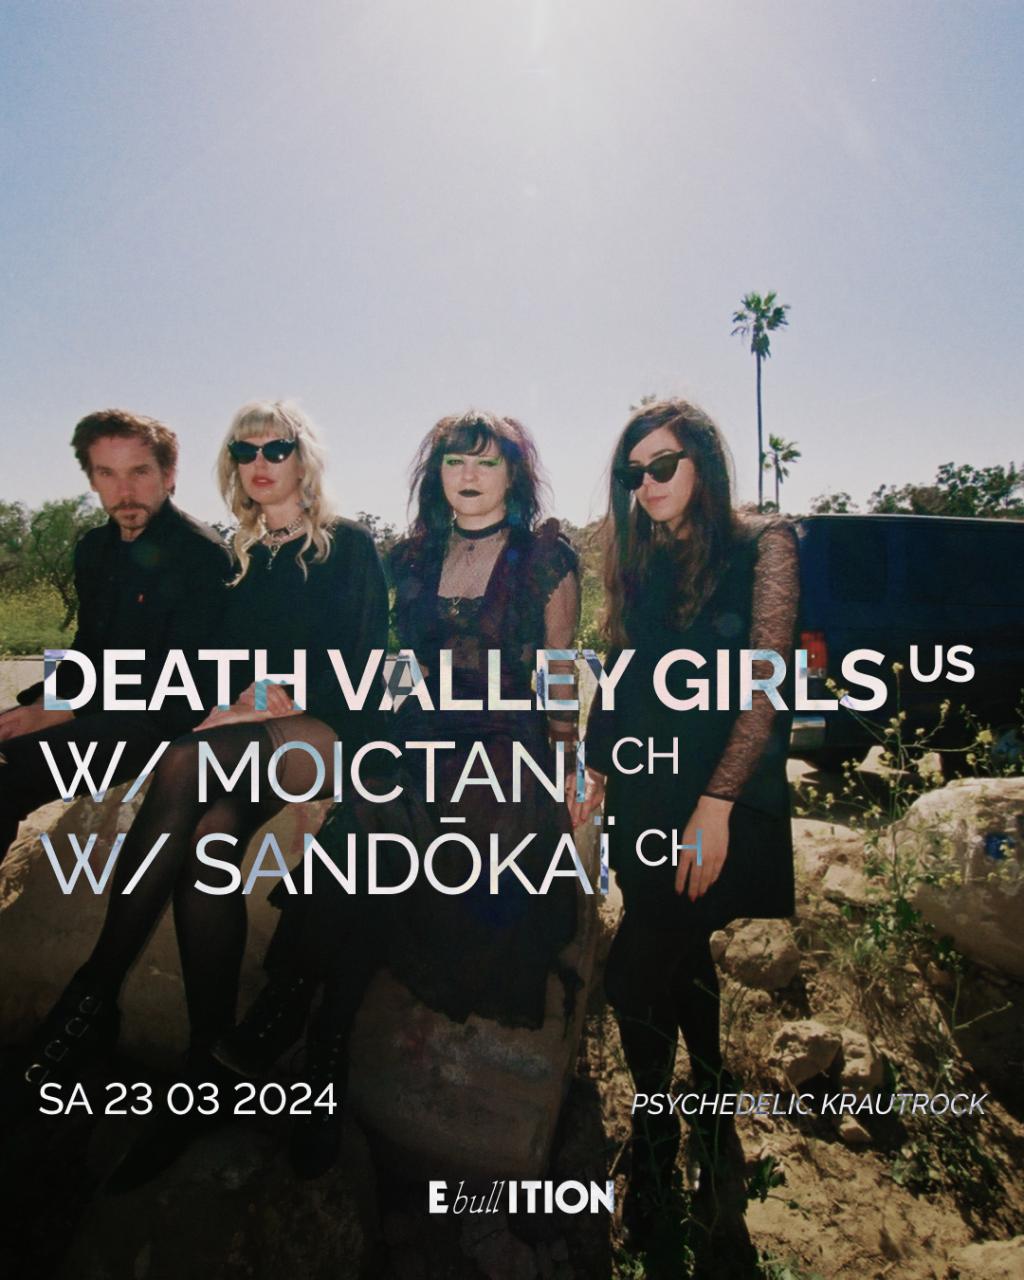 Death Valley Girls (US) + Moictani (CH) + Sandokai (CH)